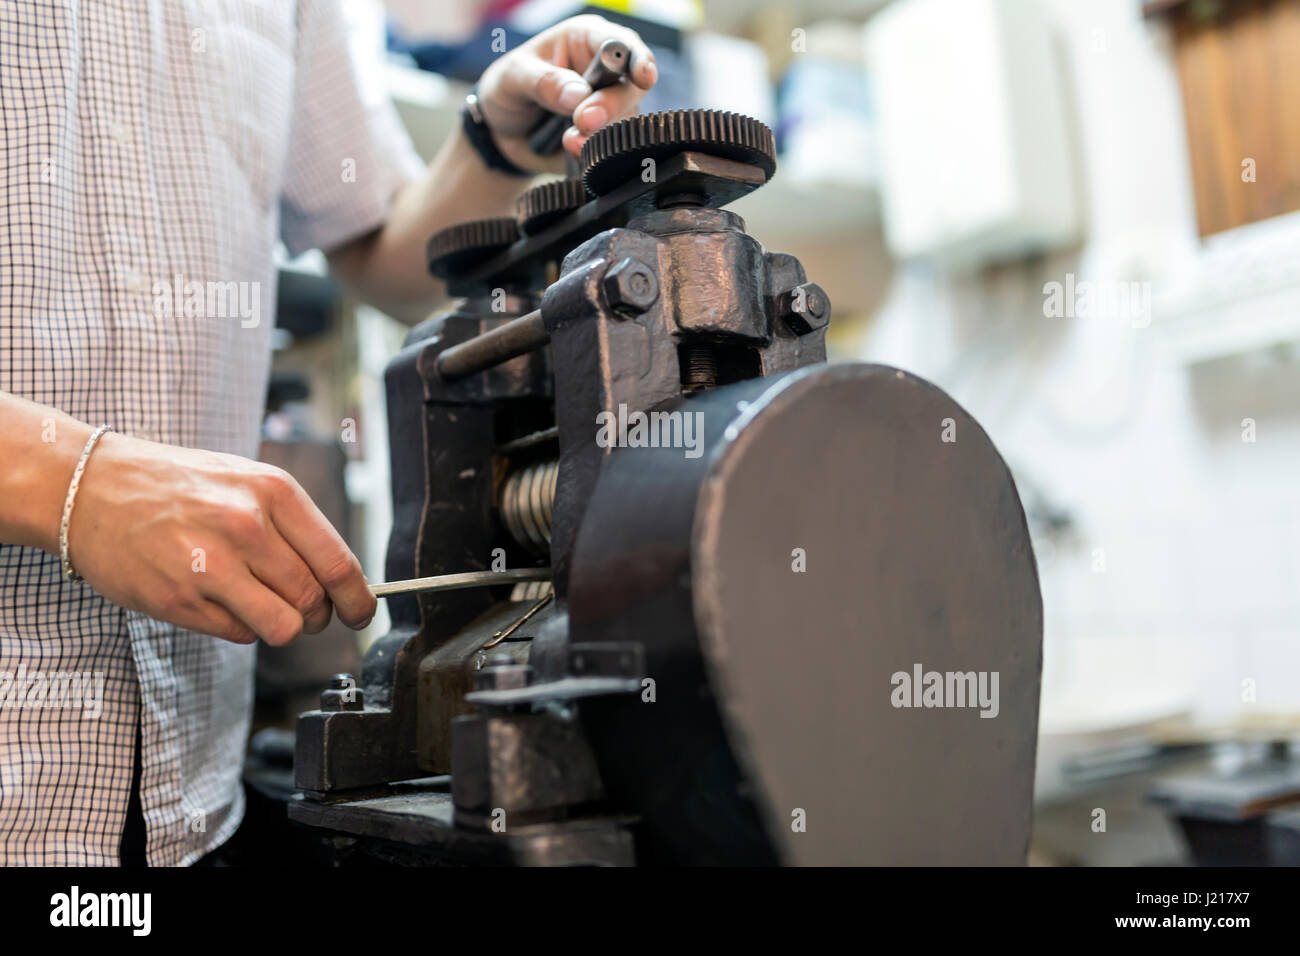 Goldsmith using machine to make metal thinner Stock Photo